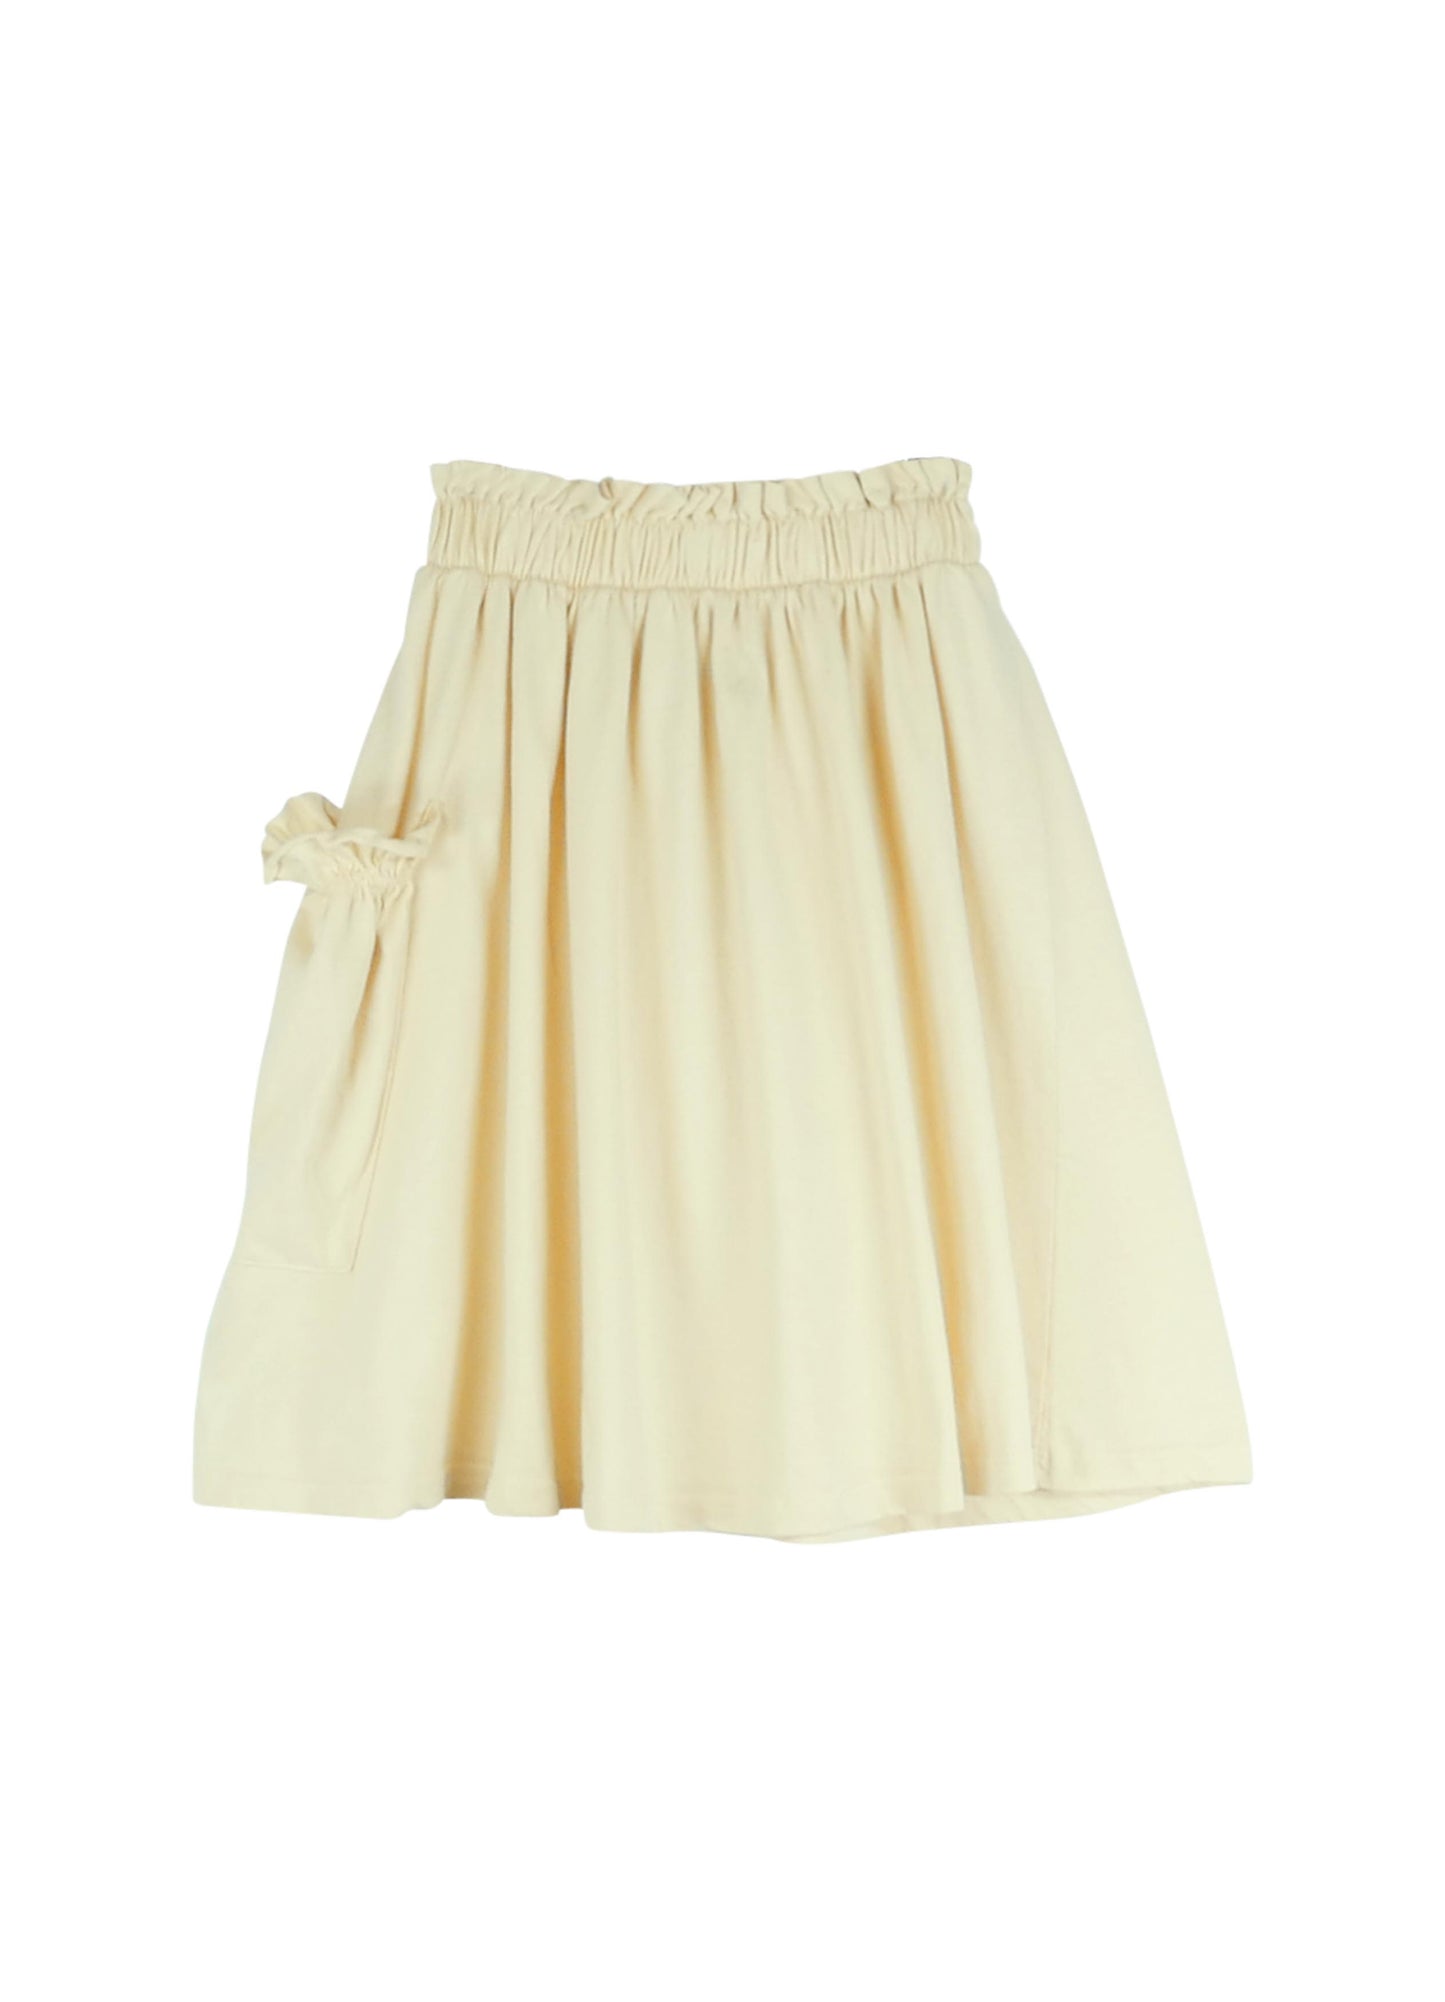 Skirt Nr. 17 - Ivory Cream